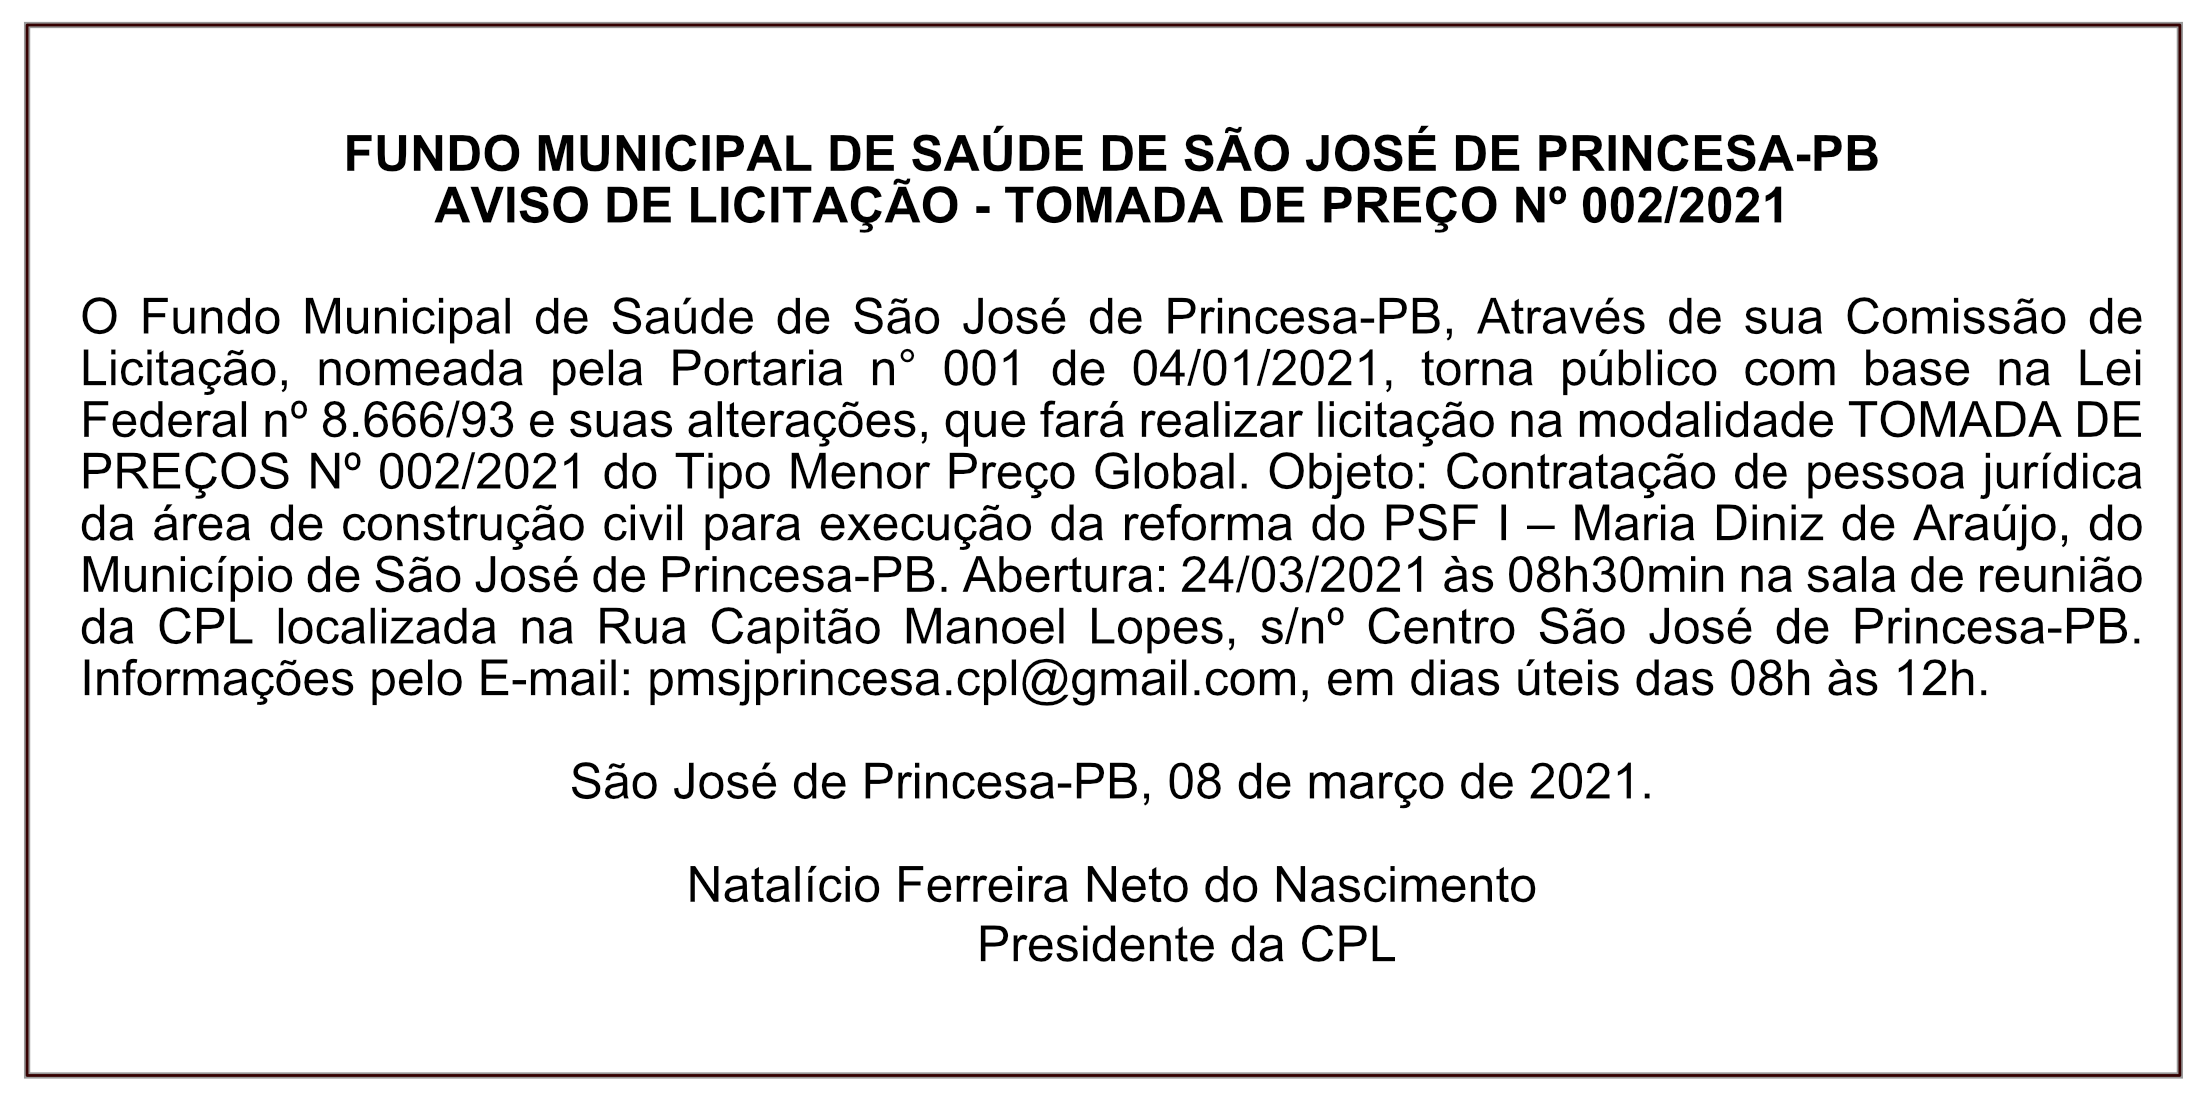 FUNDO MUNICIPAL DE SAÚDE DE SÃO JOSÉ DE PRINCESA – AVISO DE LICITAÇÃO – TOMADA DE PREÇO Nº 002/2021